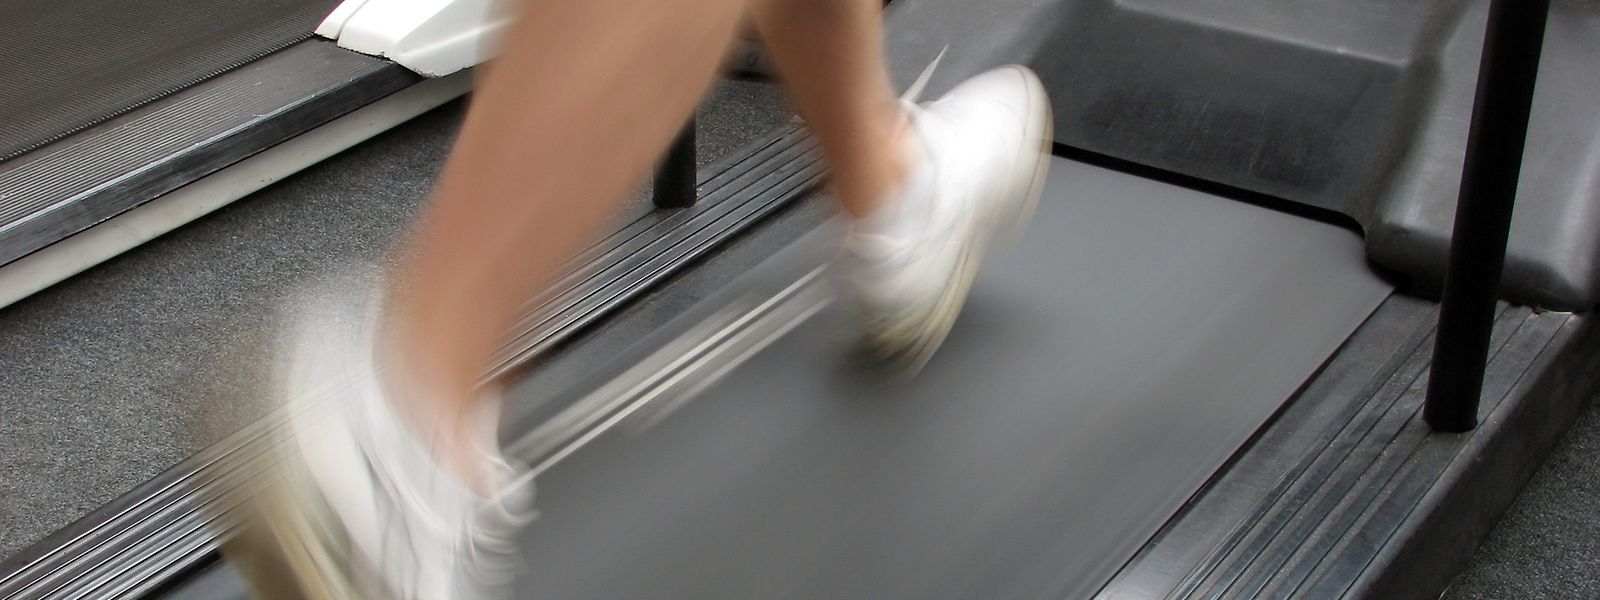 Les quelque 20.000 adhérents des salles de fitness luxembourgeoises vont devoir encore patienter avant de retrouver les engins.